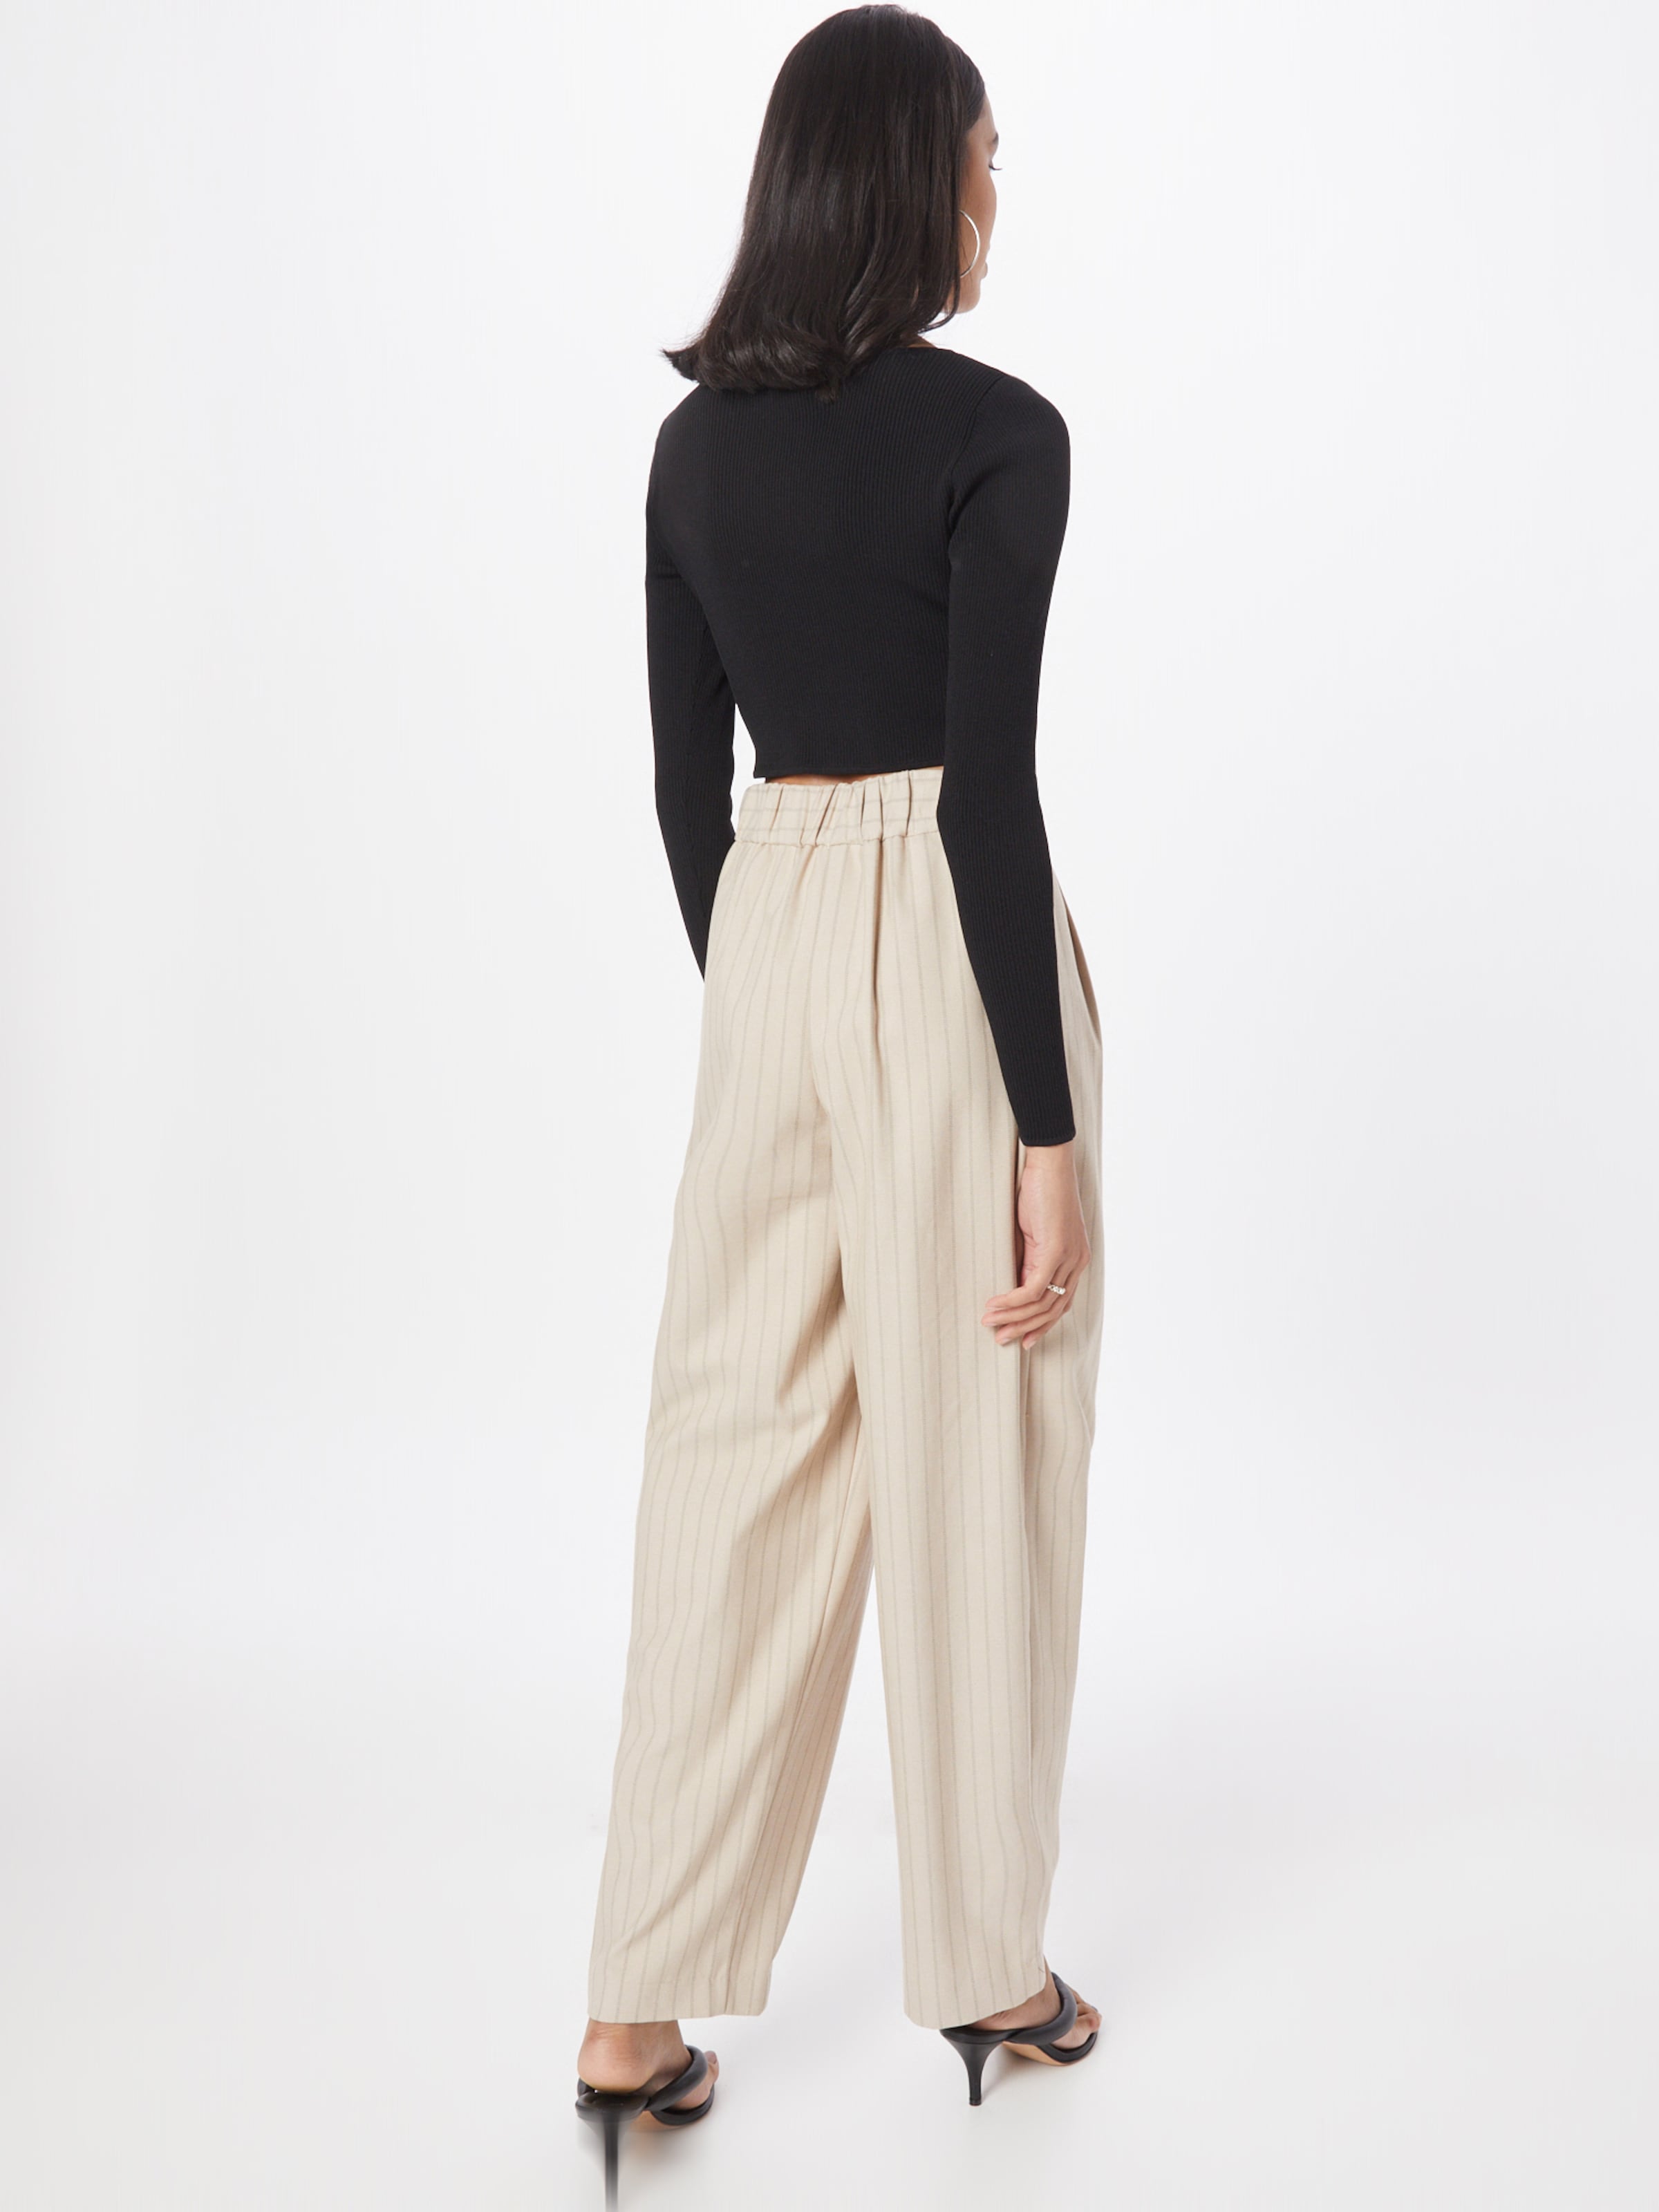 River Island 100% Linen Crop Trousers Size 12 W33 L19.5 | eBay